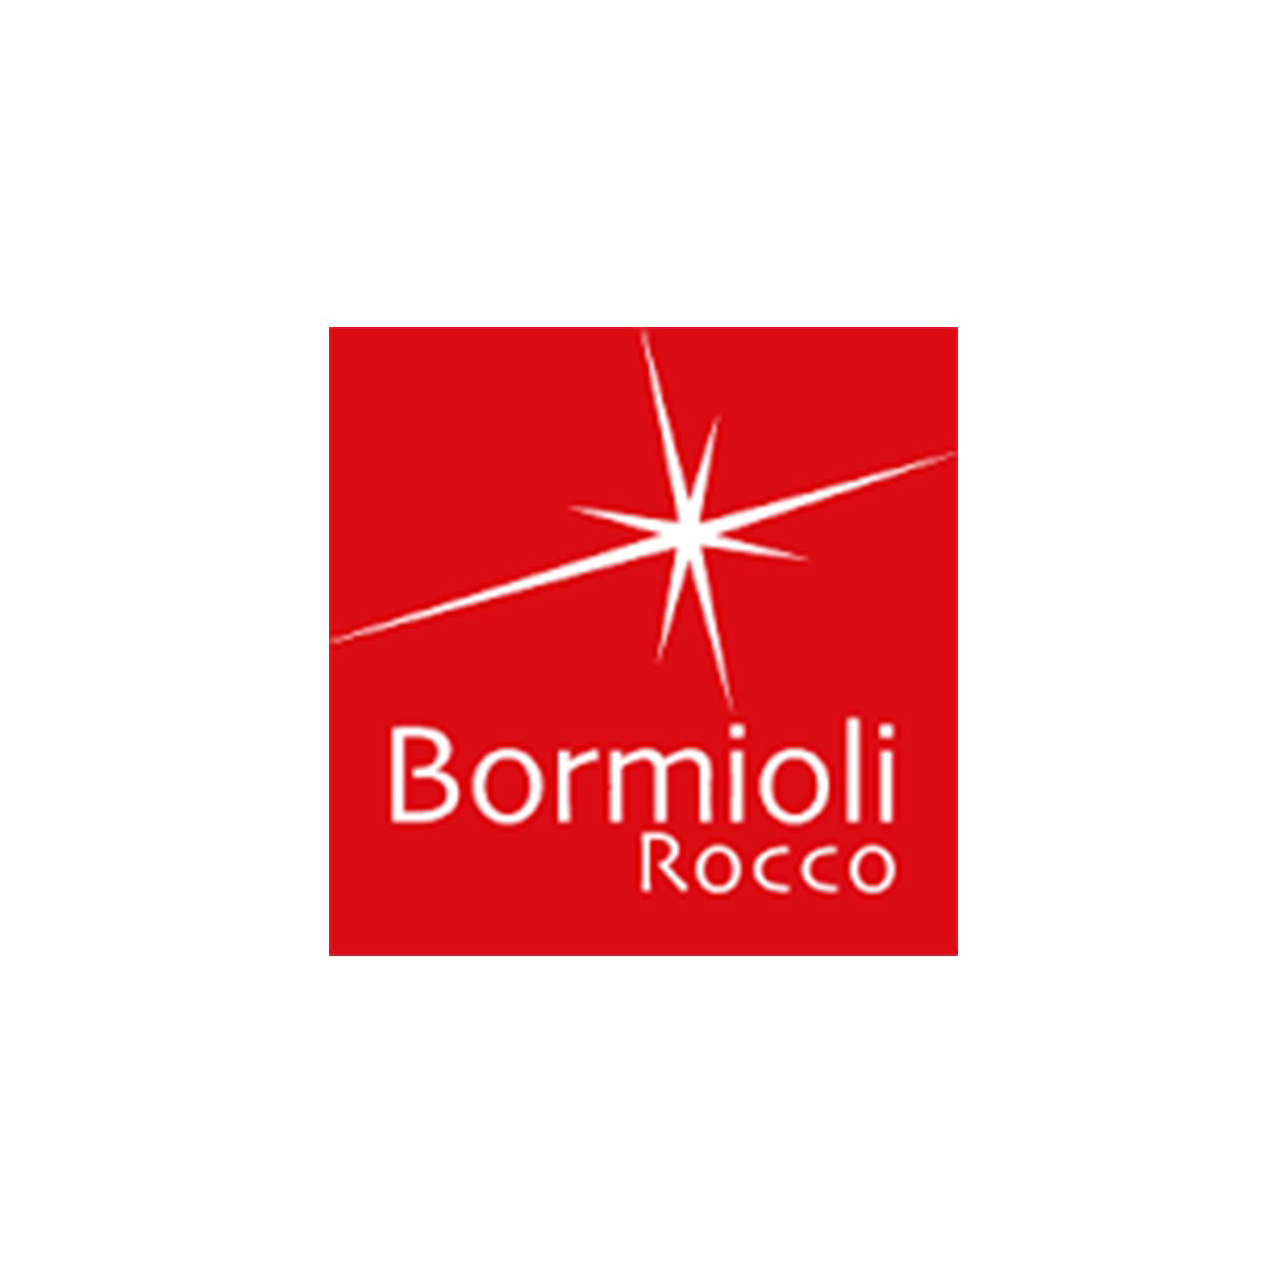 Bormioli 玻璃用具